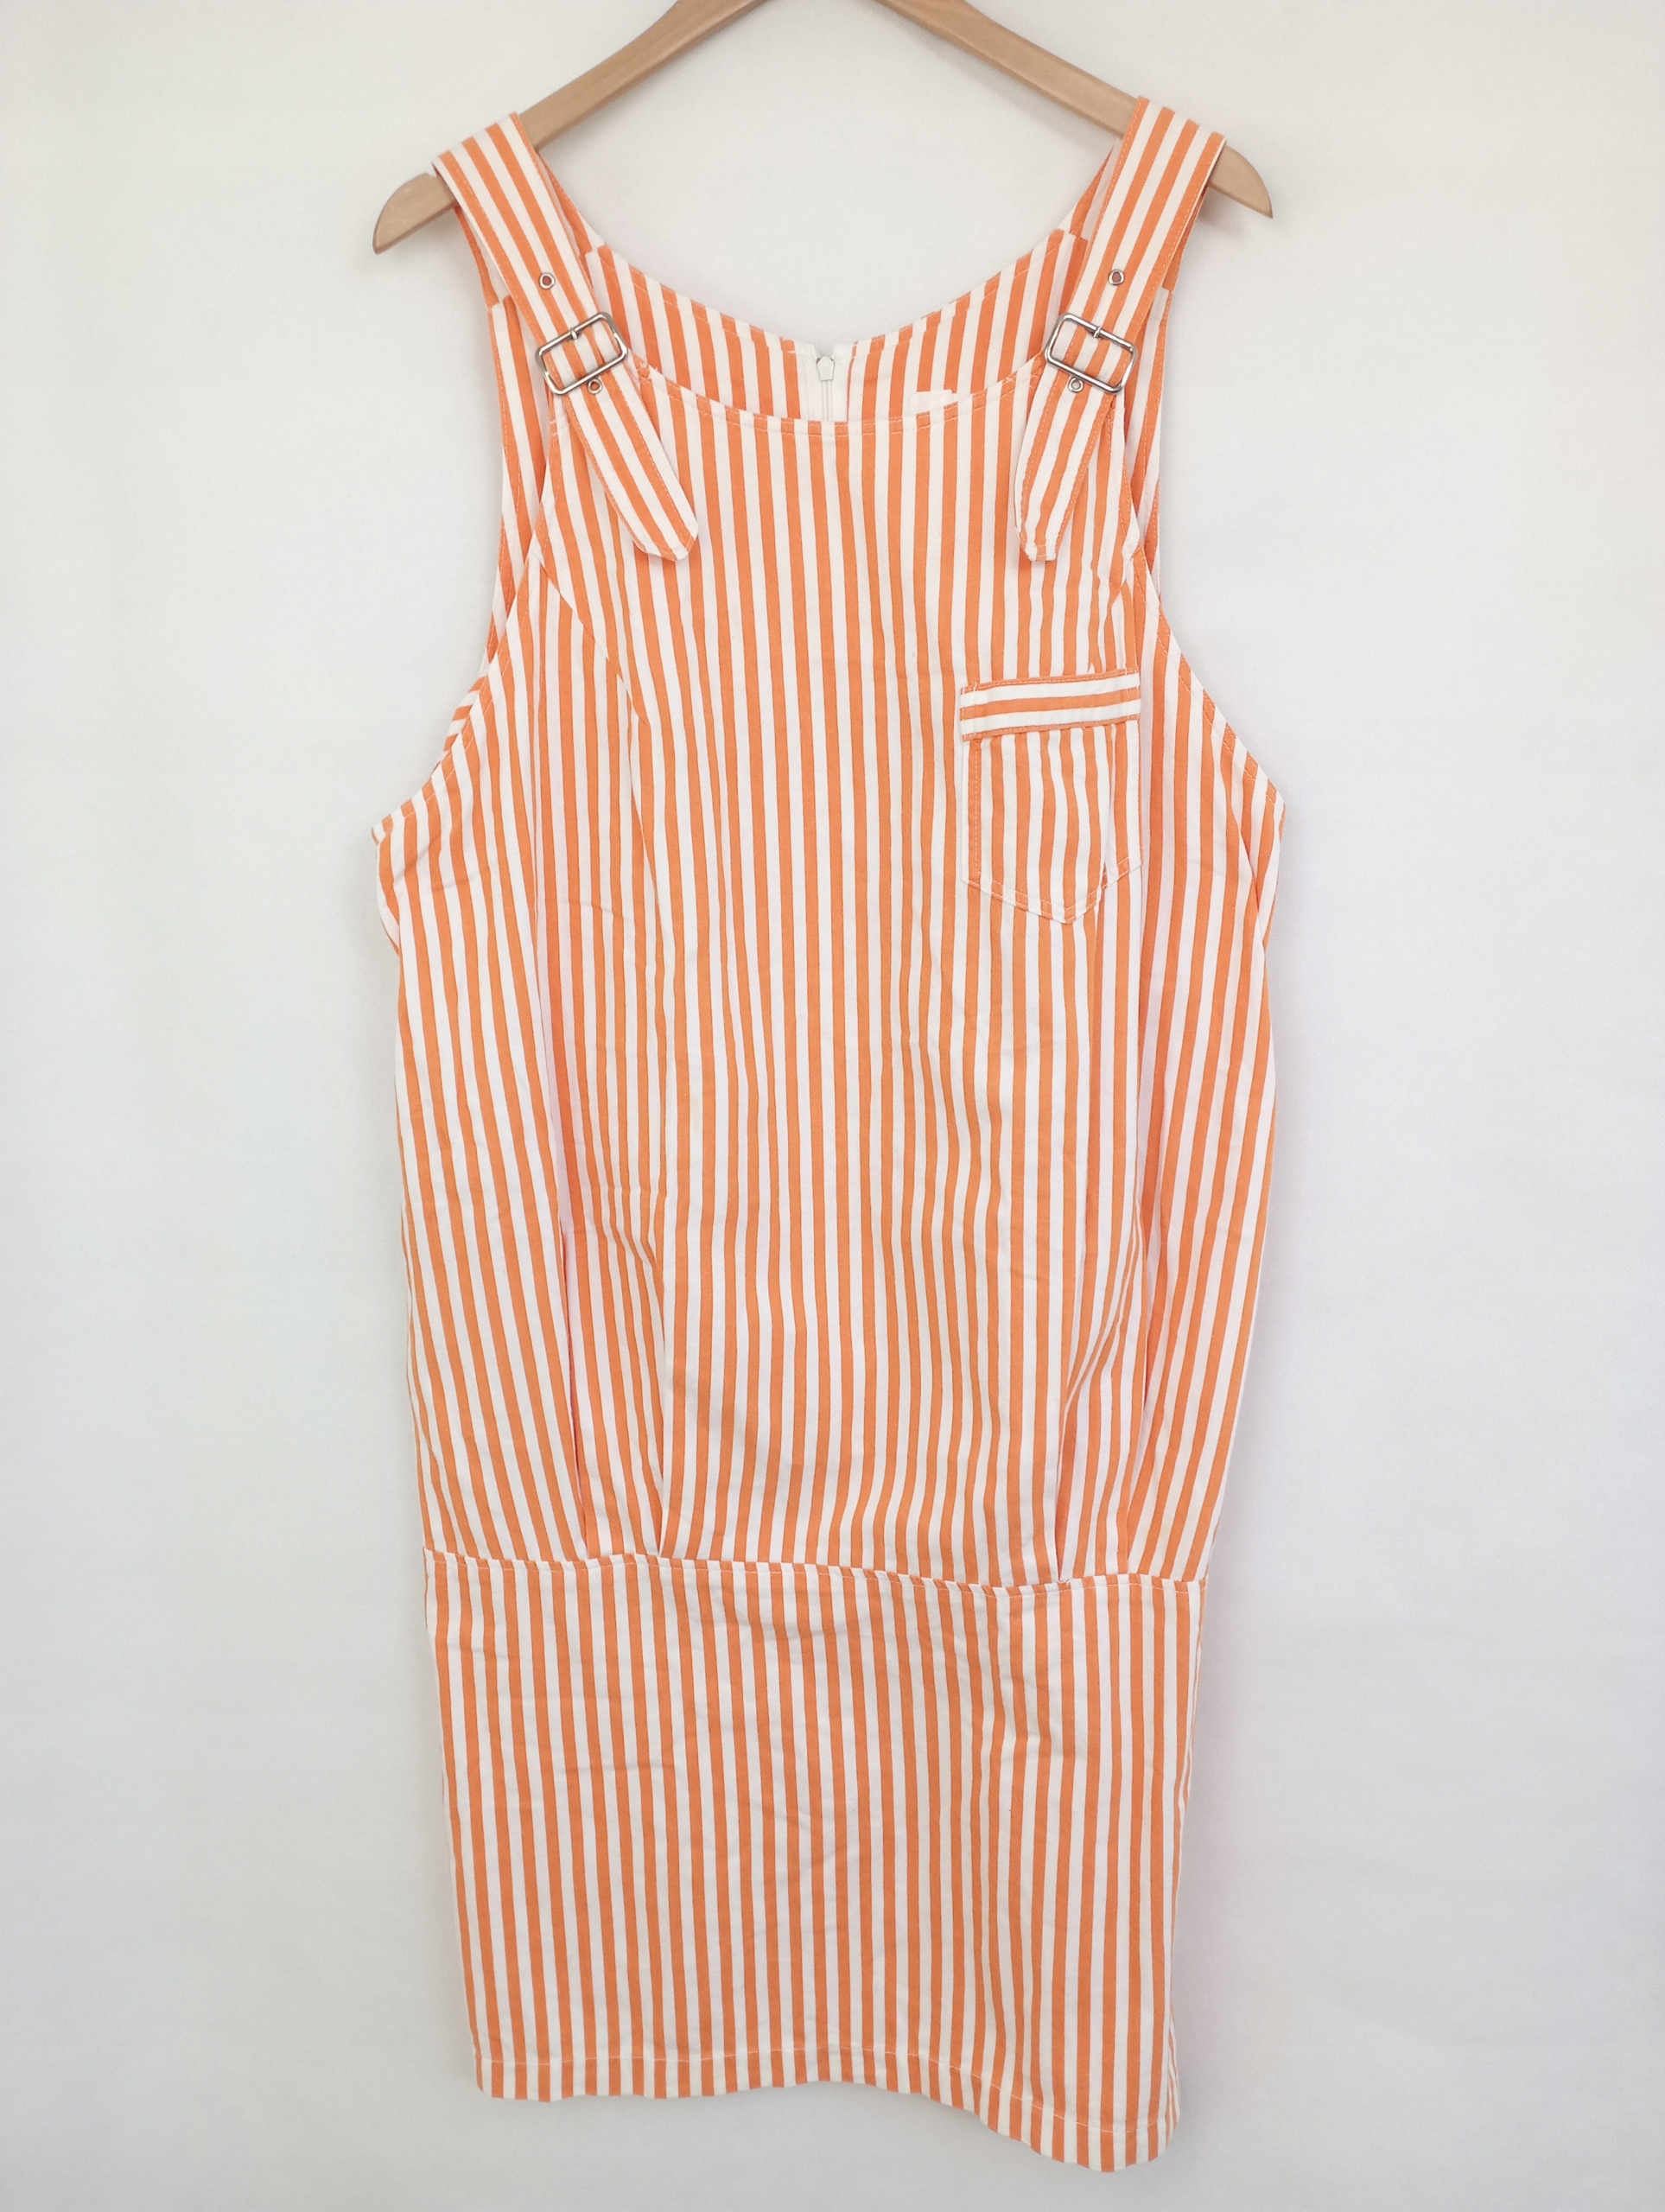 ATS šaty NICE DAY by TOKYO KINDER pruhy oranžová biela M/L